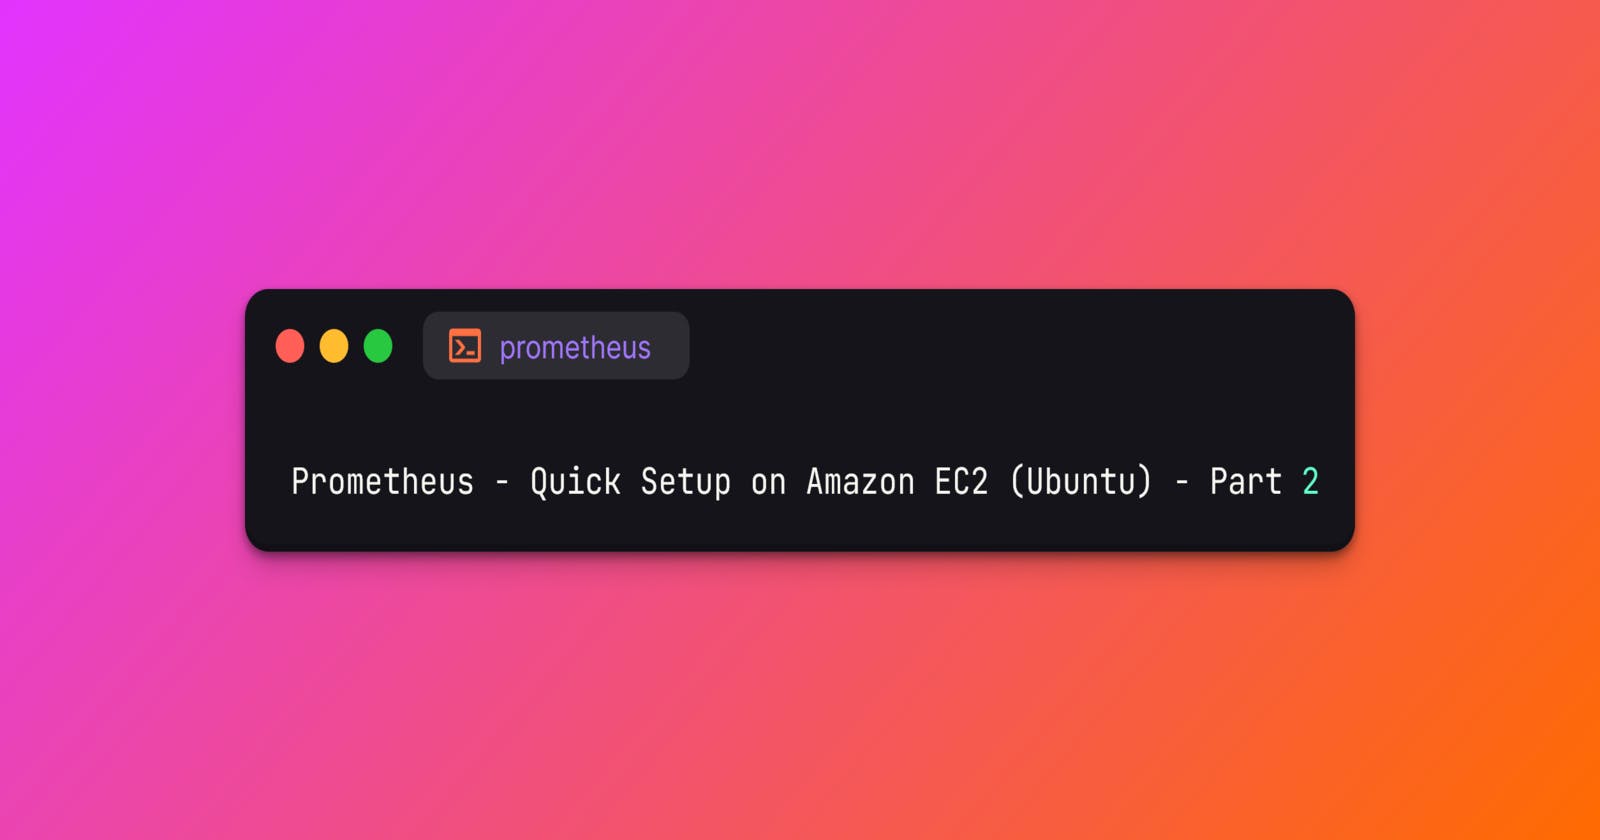 Prometheus - Quick Setup on Amazon EC2 (Ubuntu) - Part 2